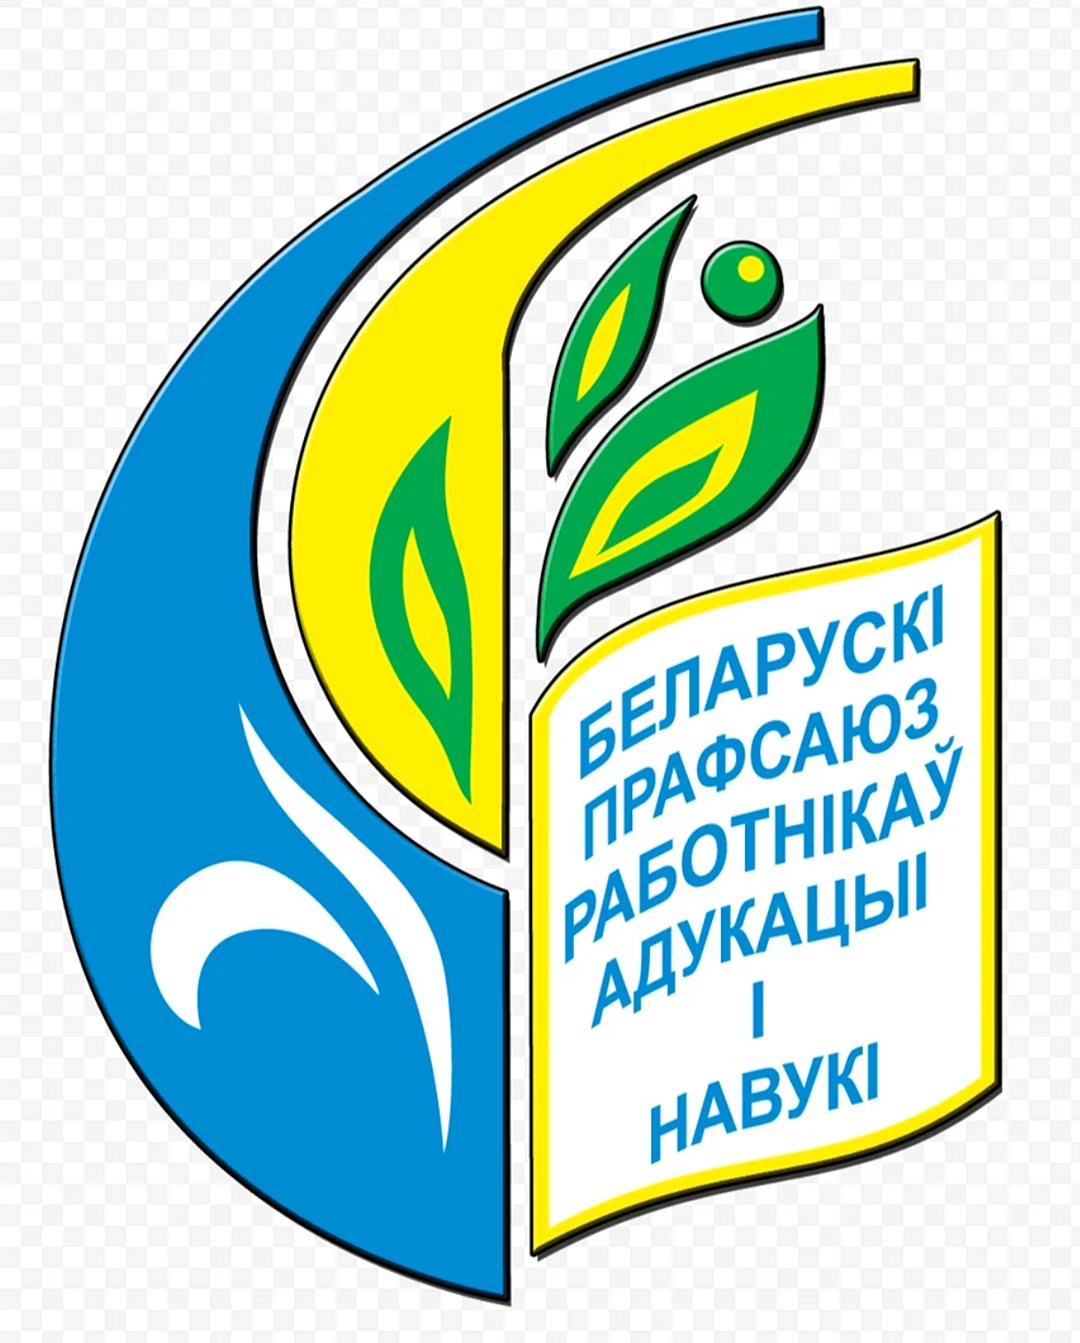 Логотип ВГУ Машерова